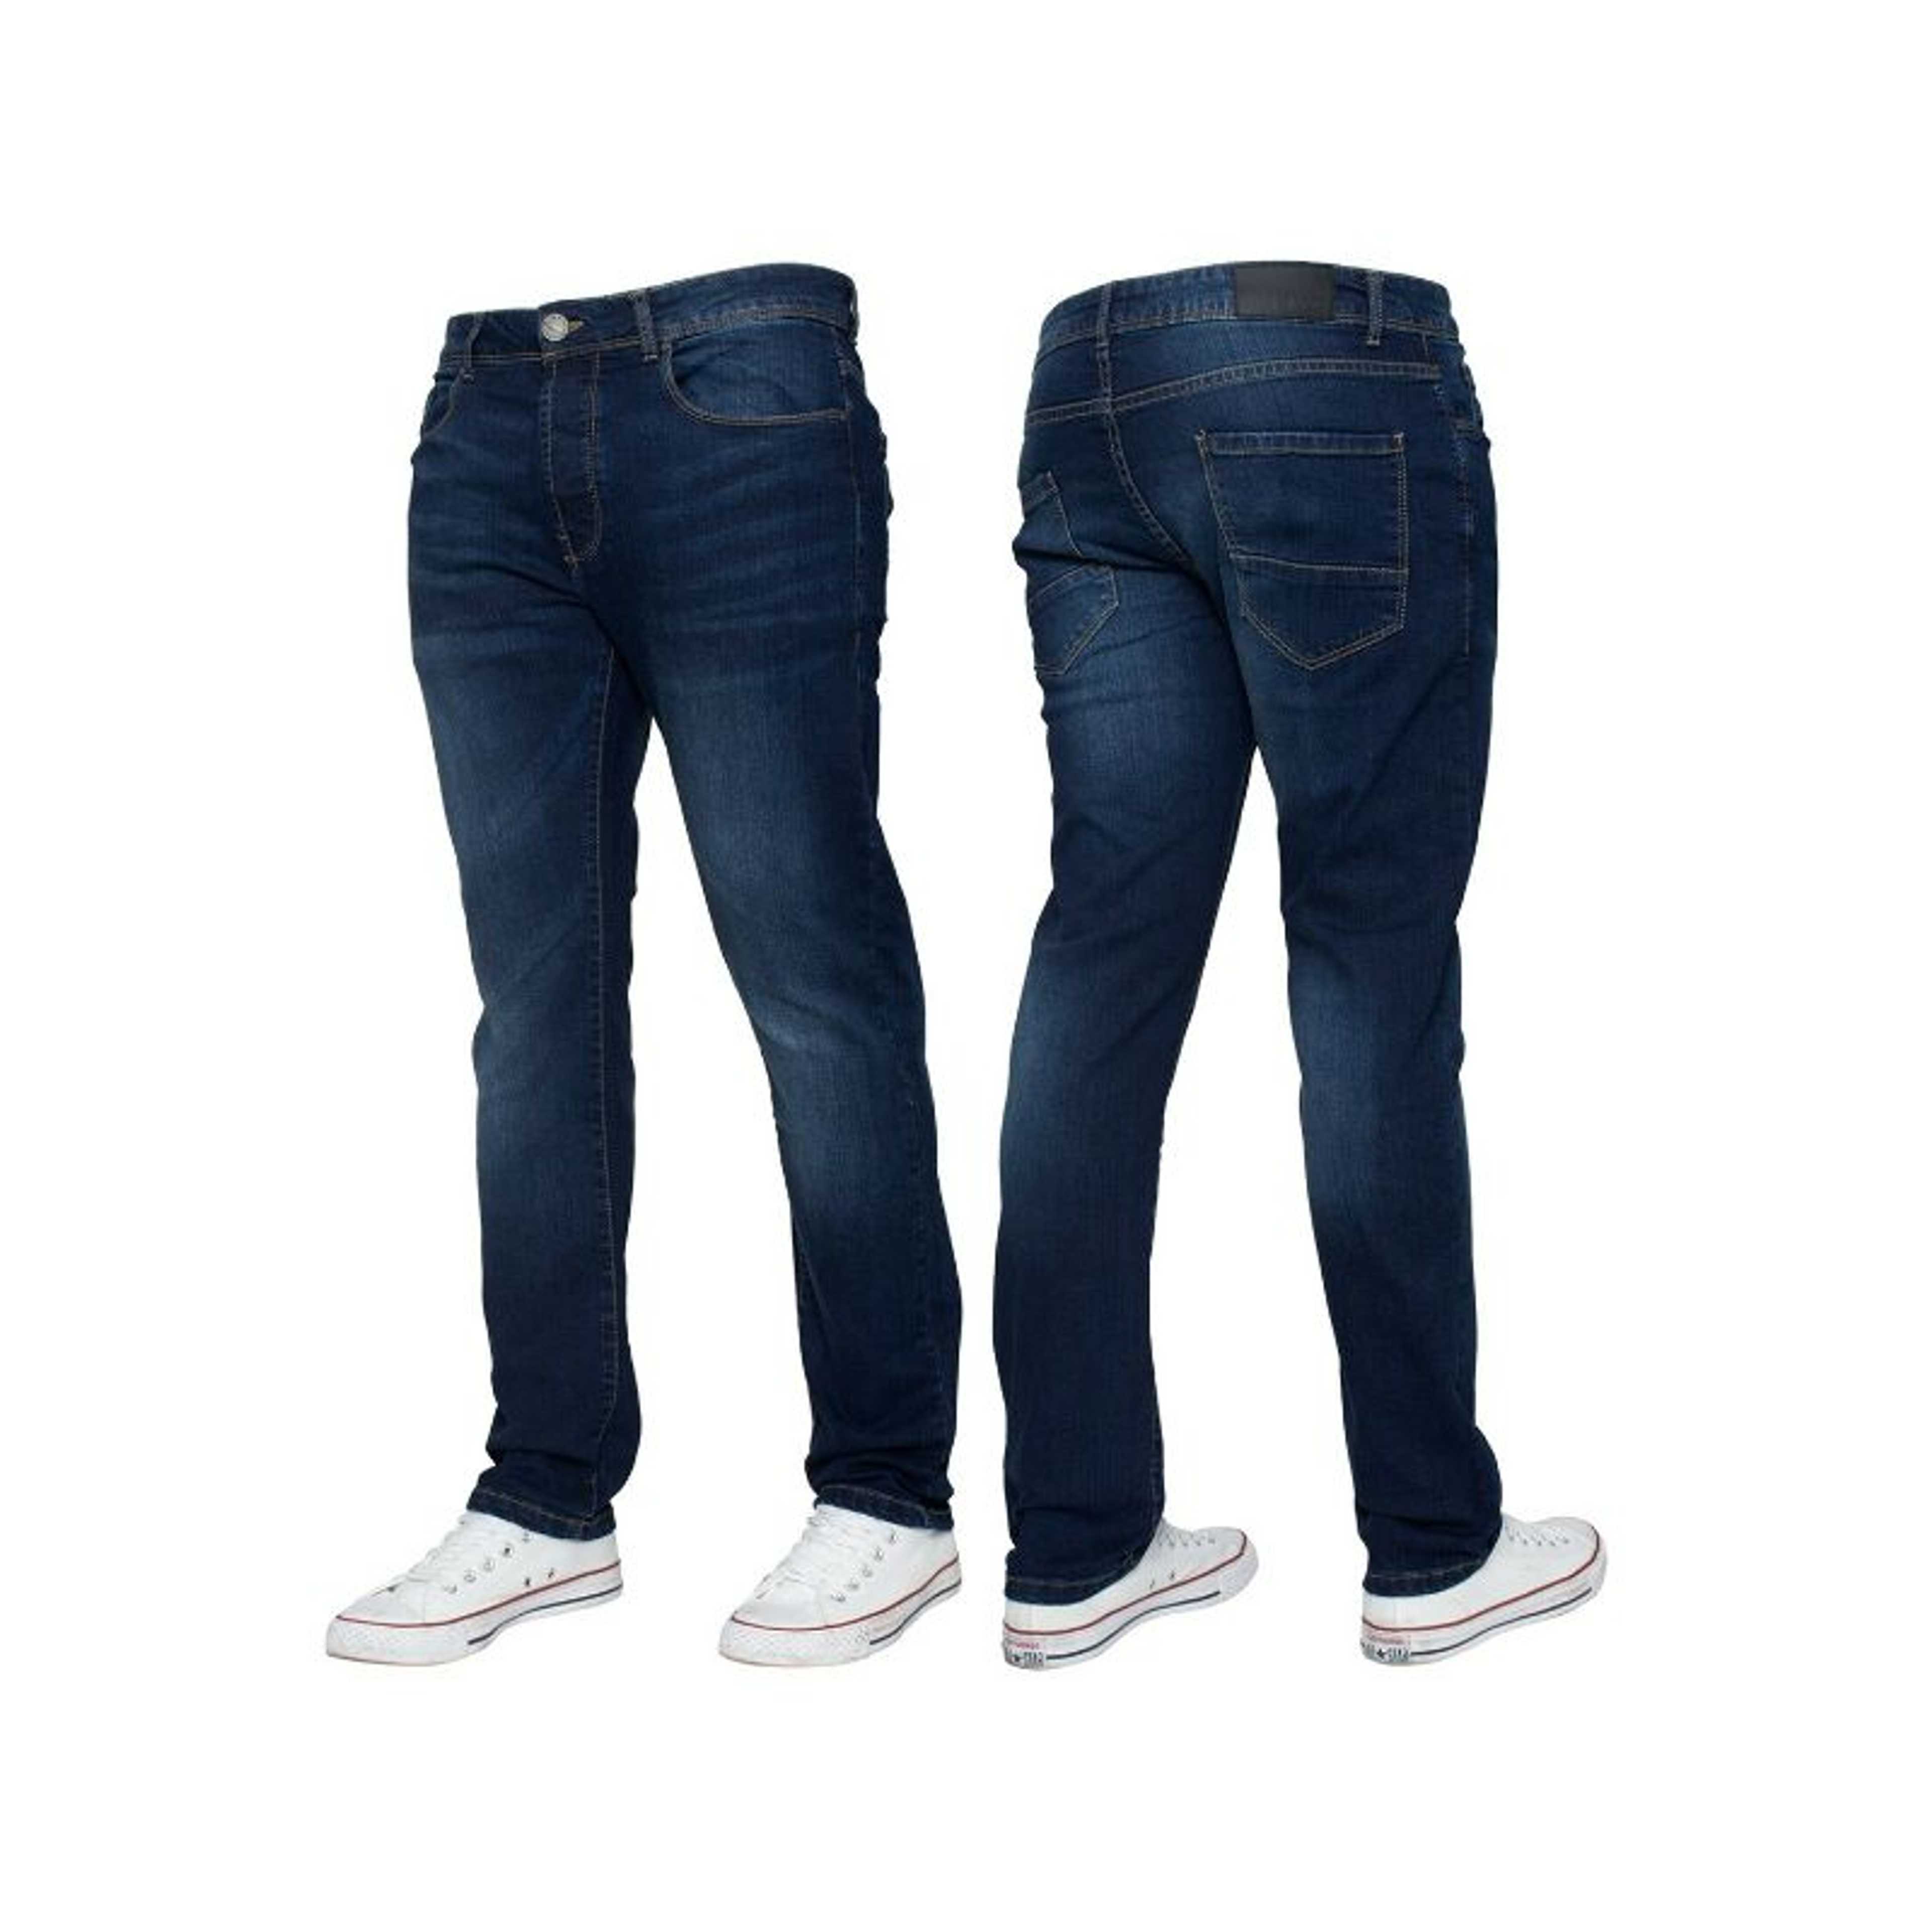 Rubahas Men’s Skinny Denim Jeans Pant In Blue Color